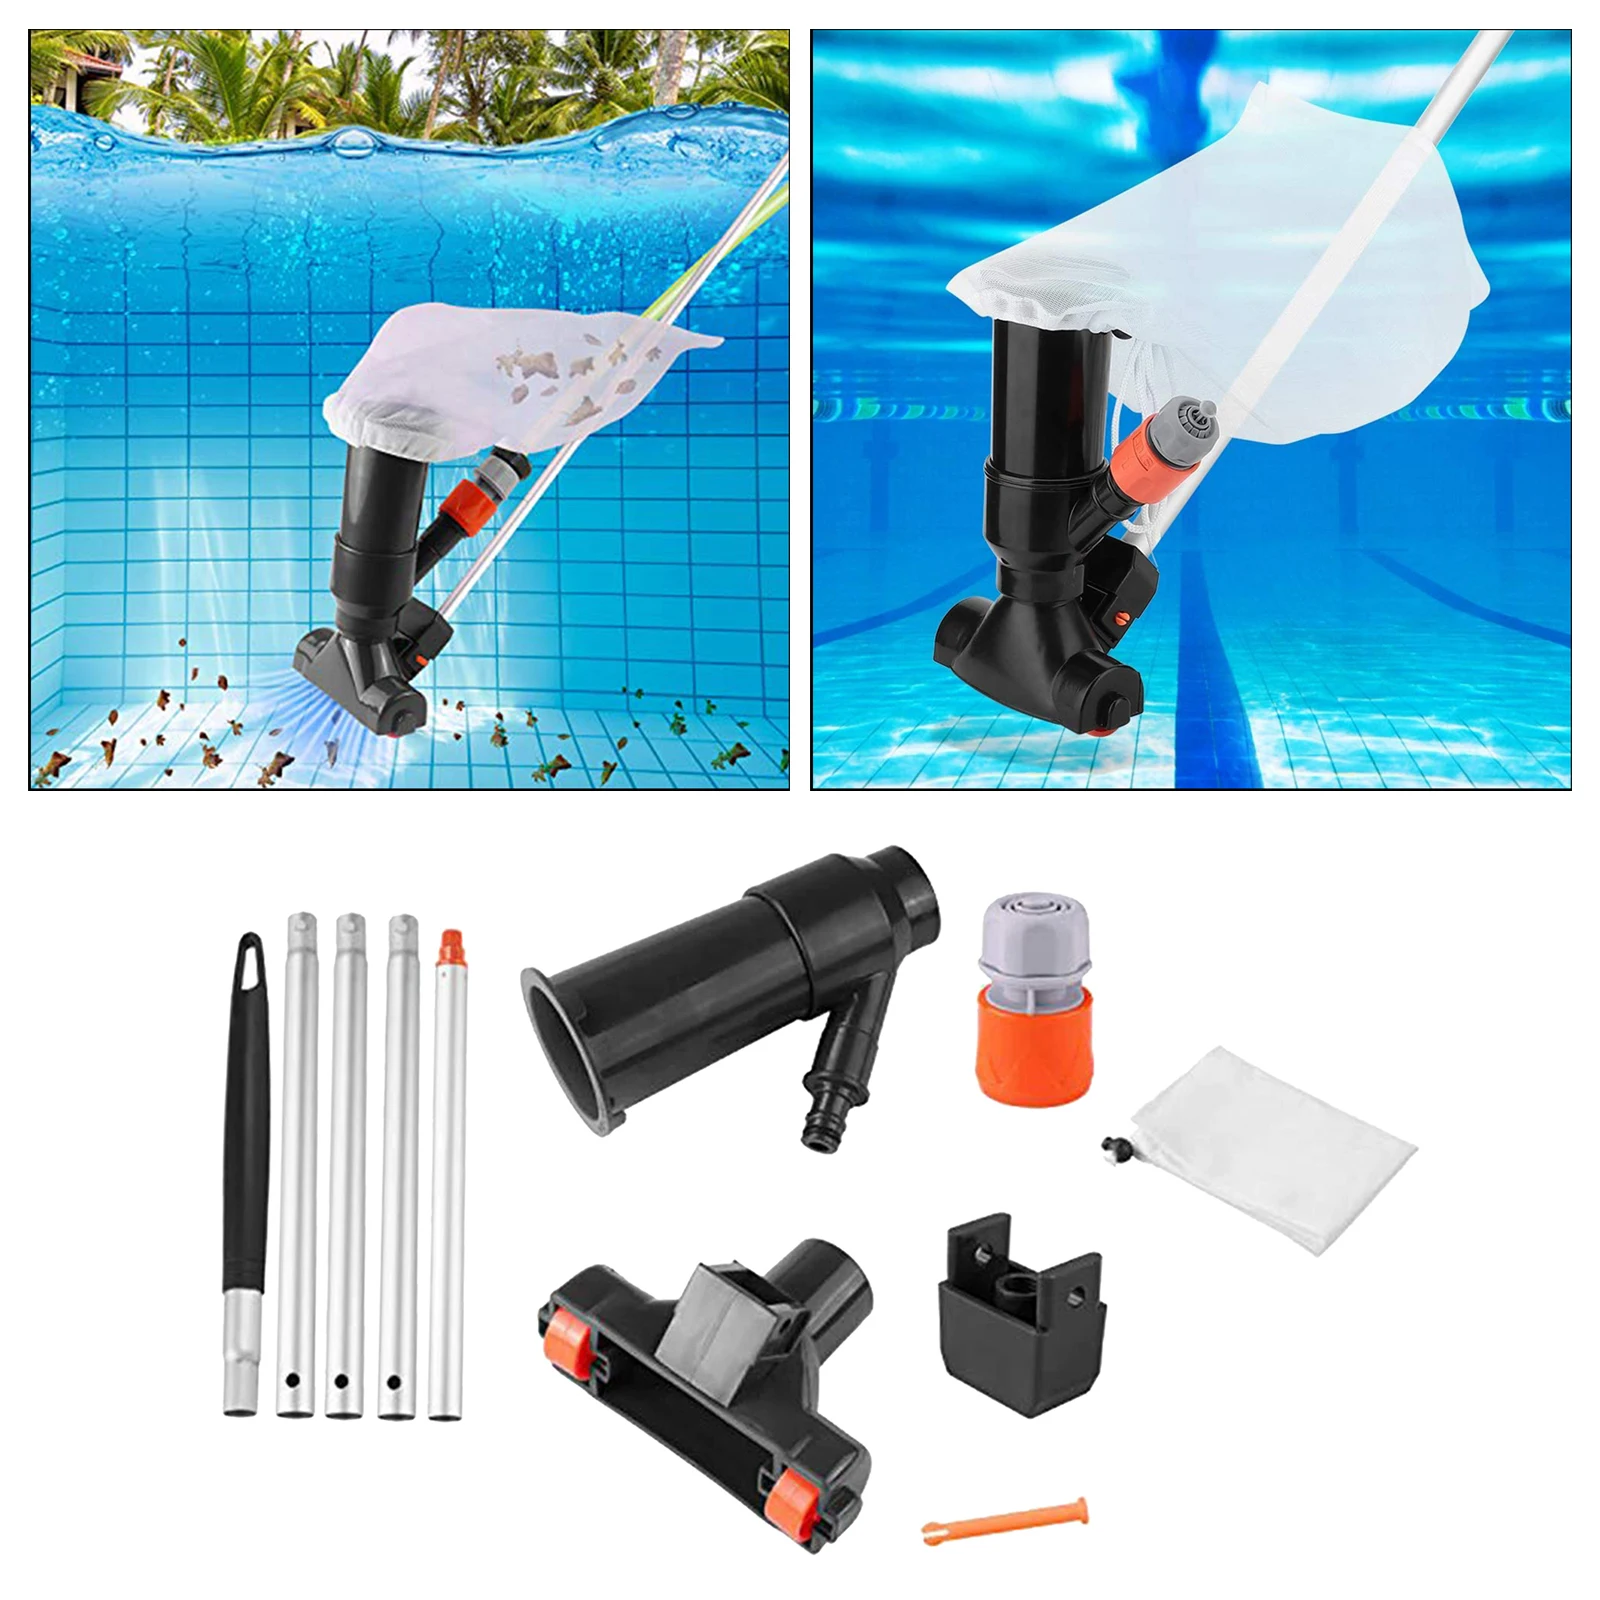 Portable Swimming Pool Vacuum, Underwater Cleaner Pool Vacuum Cleaner, with 5 Section Pole Handheld Pool Vacuum EU Standard